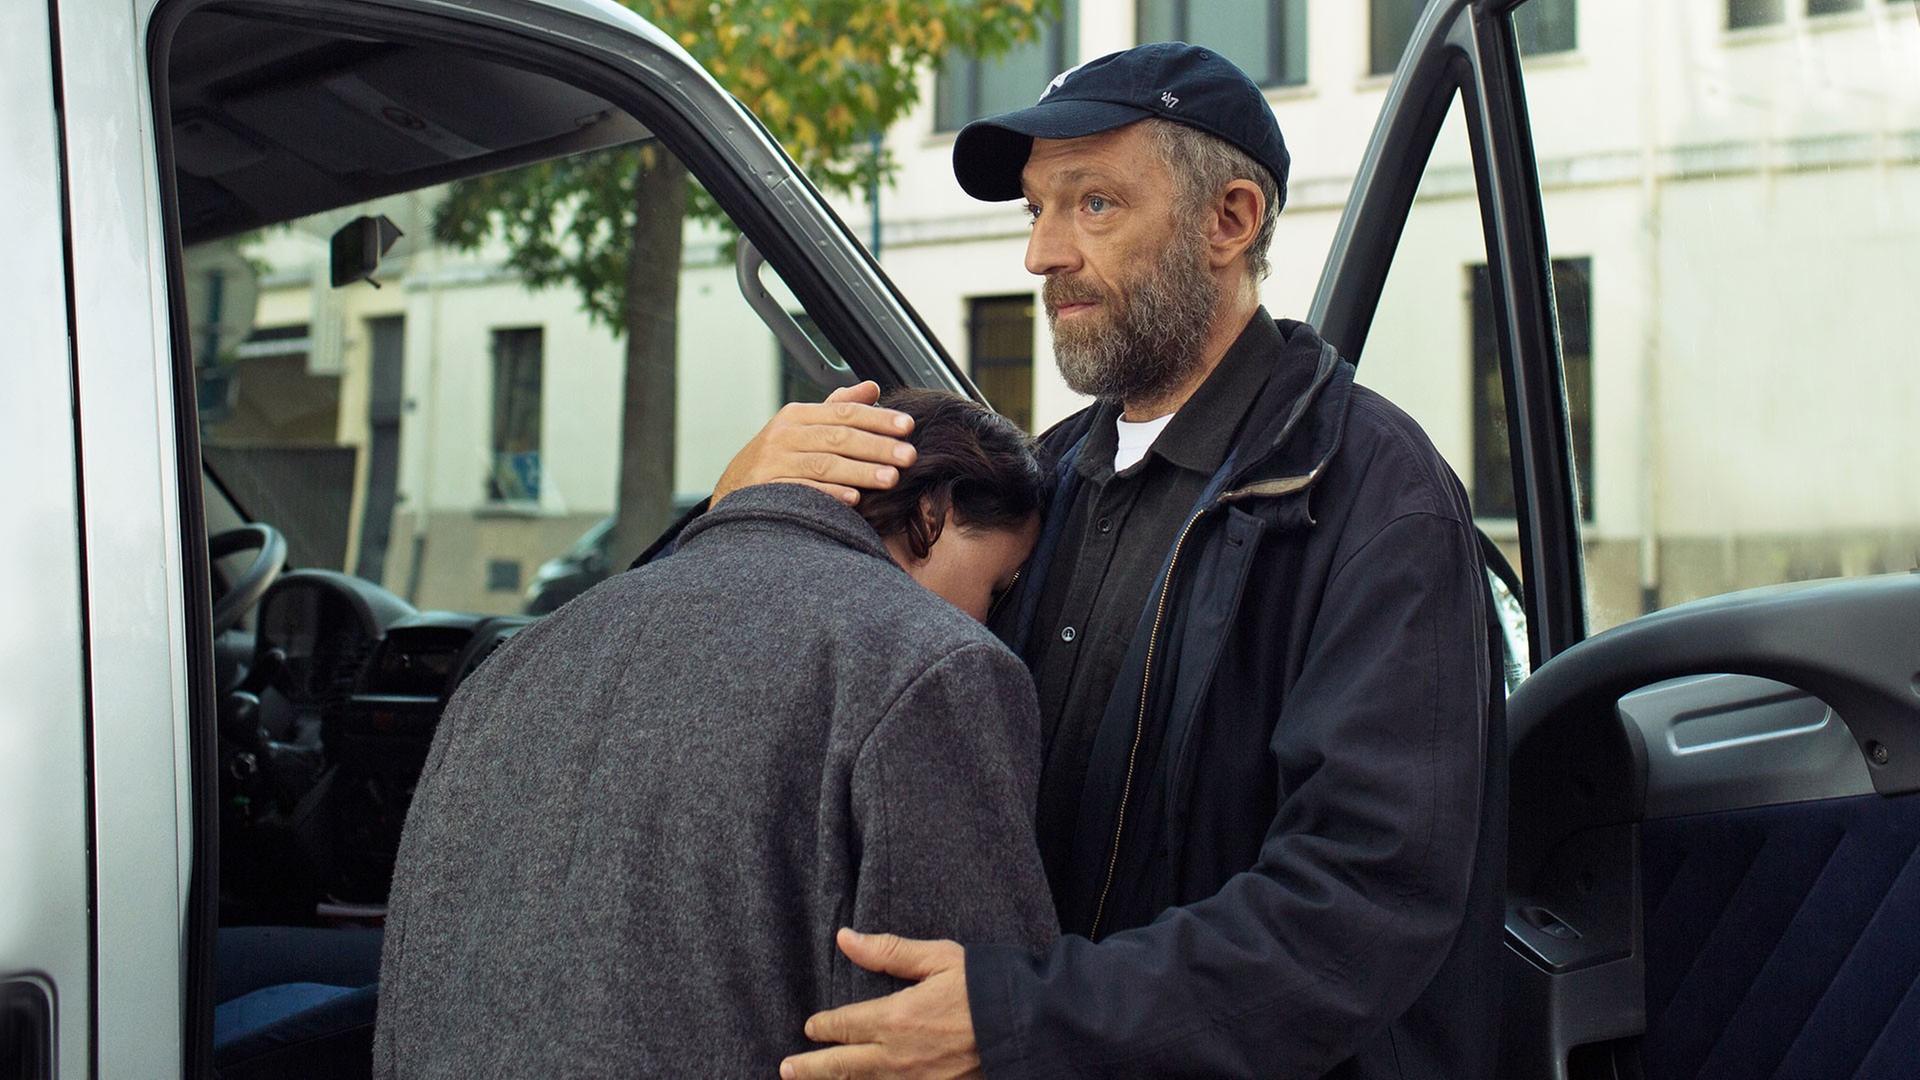 Vincent Cassel als Bruno tröstet den jungen Benjamin Lesieur als Joseph und lässt ihn an seine Schulter anlehnen.